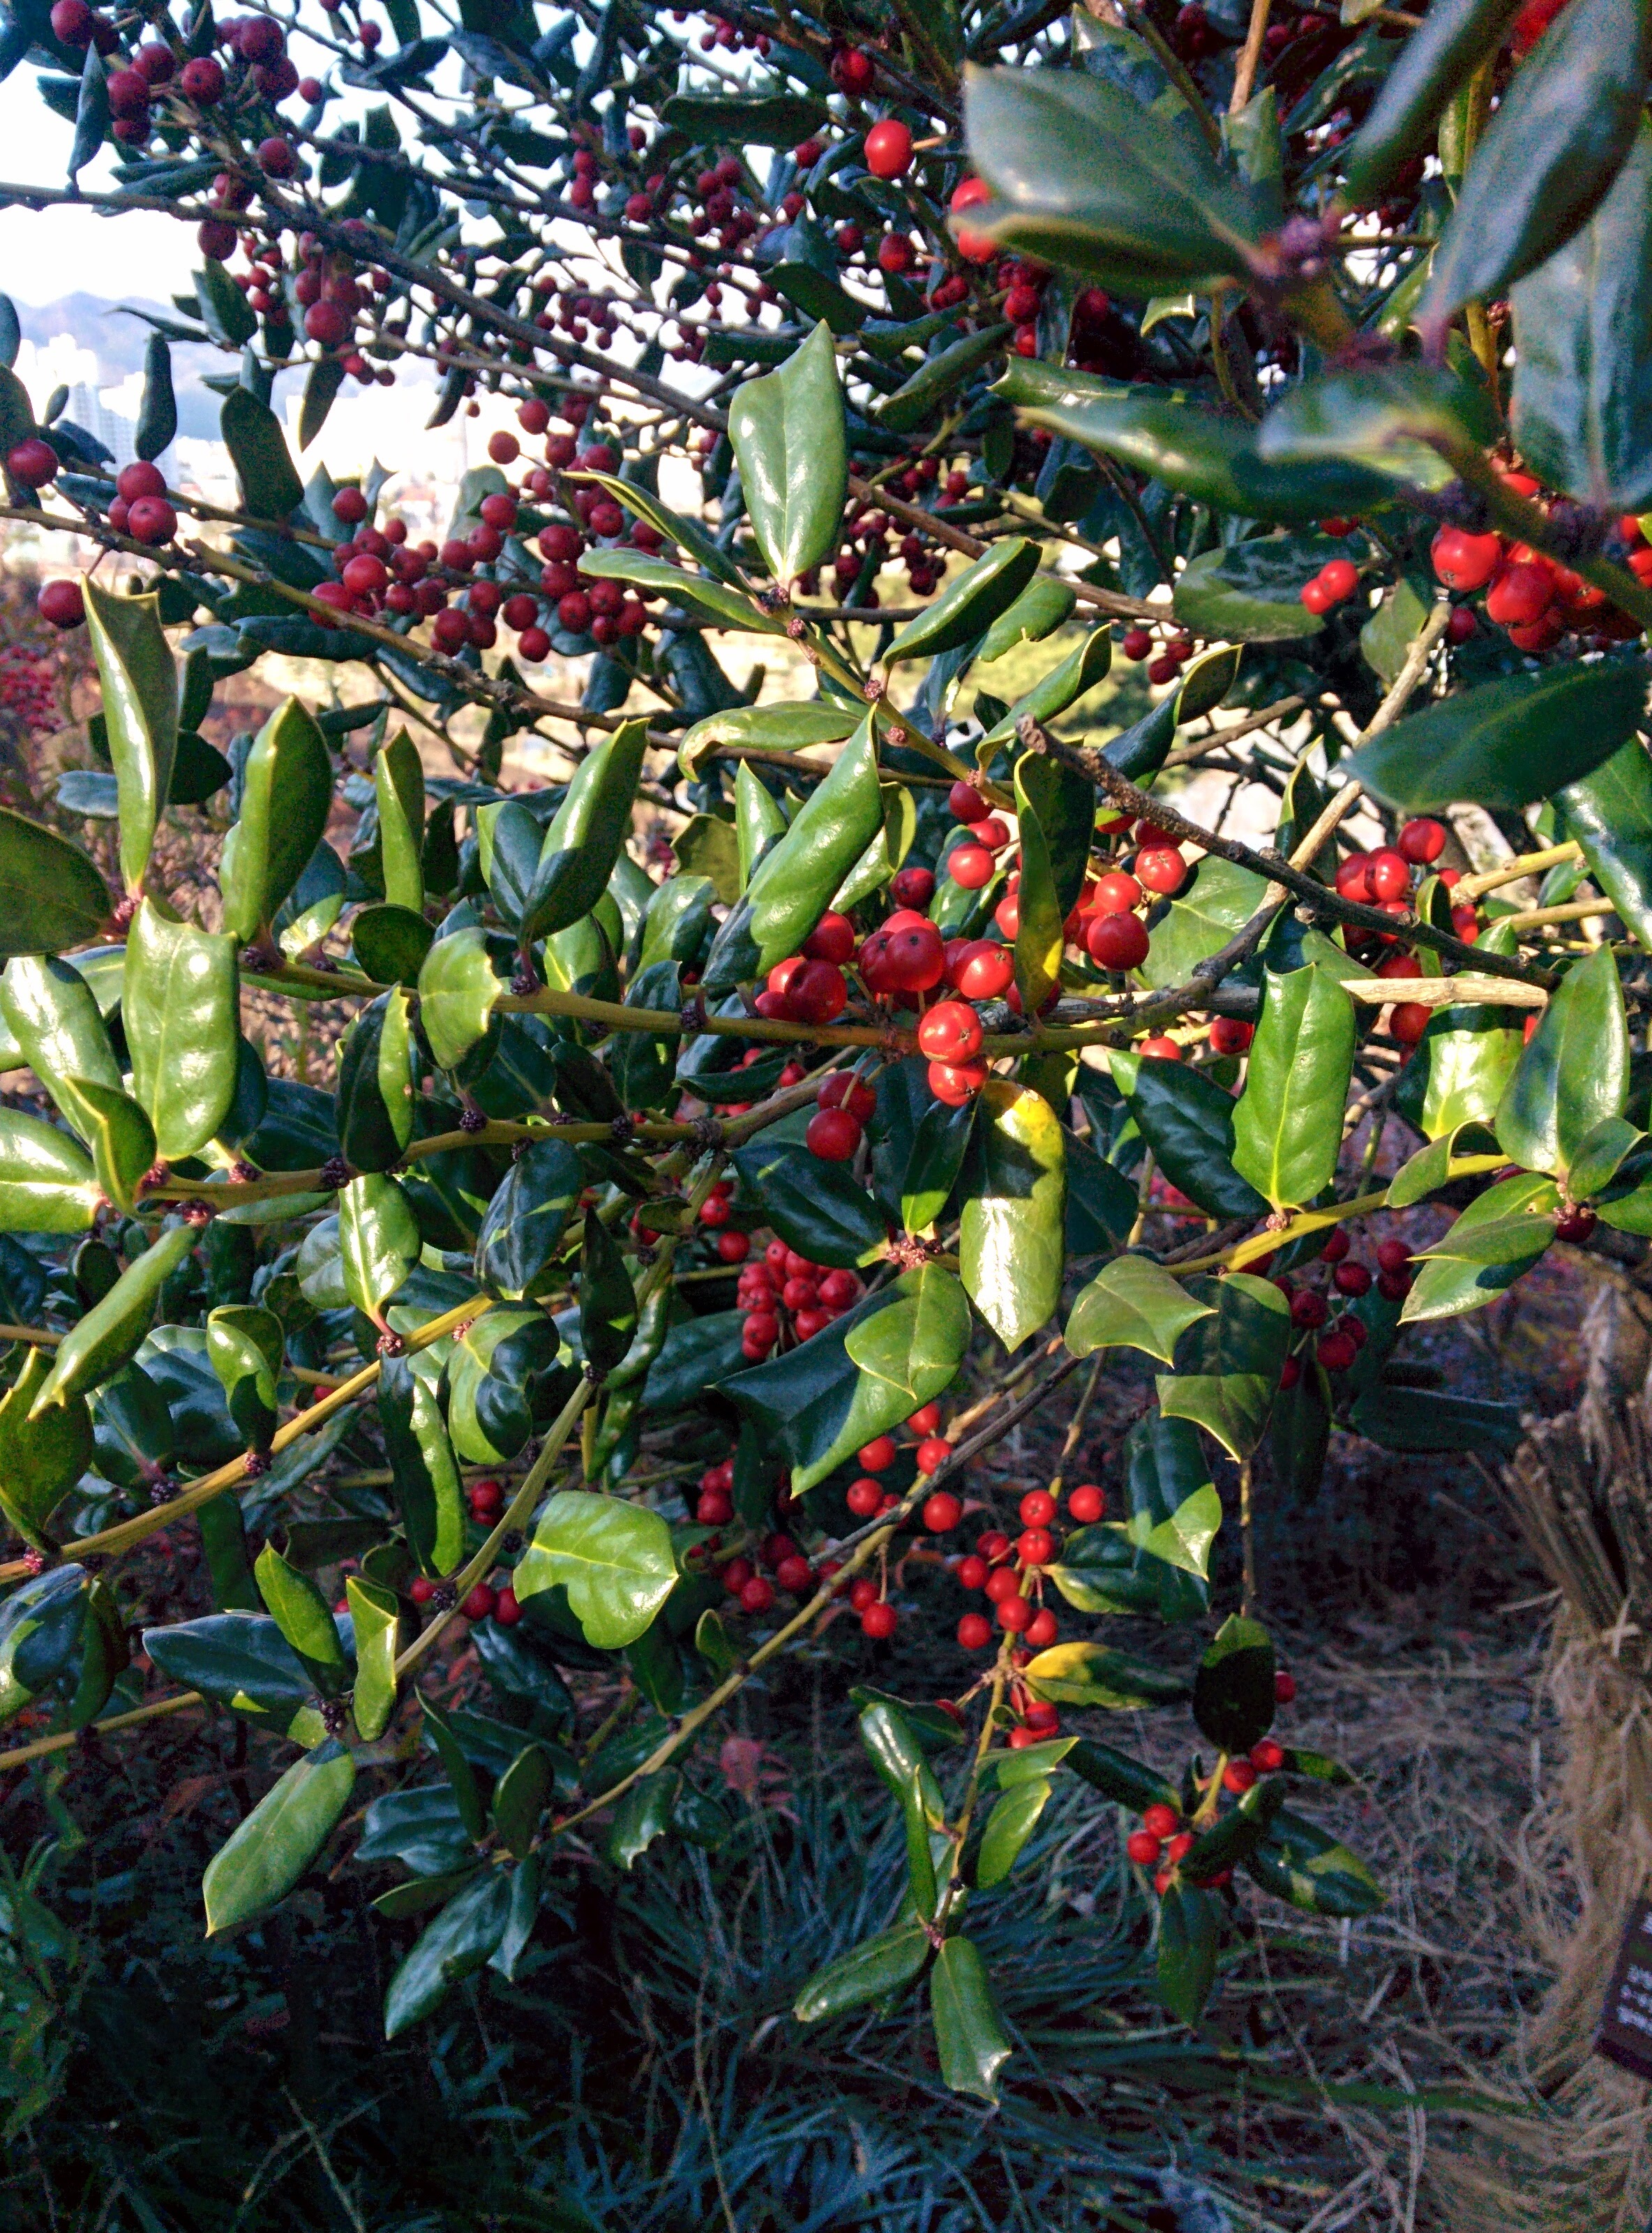 IMG_20151228_143153.jpg 붉은색 열매를 잔뜩 매단 호랑가시나무